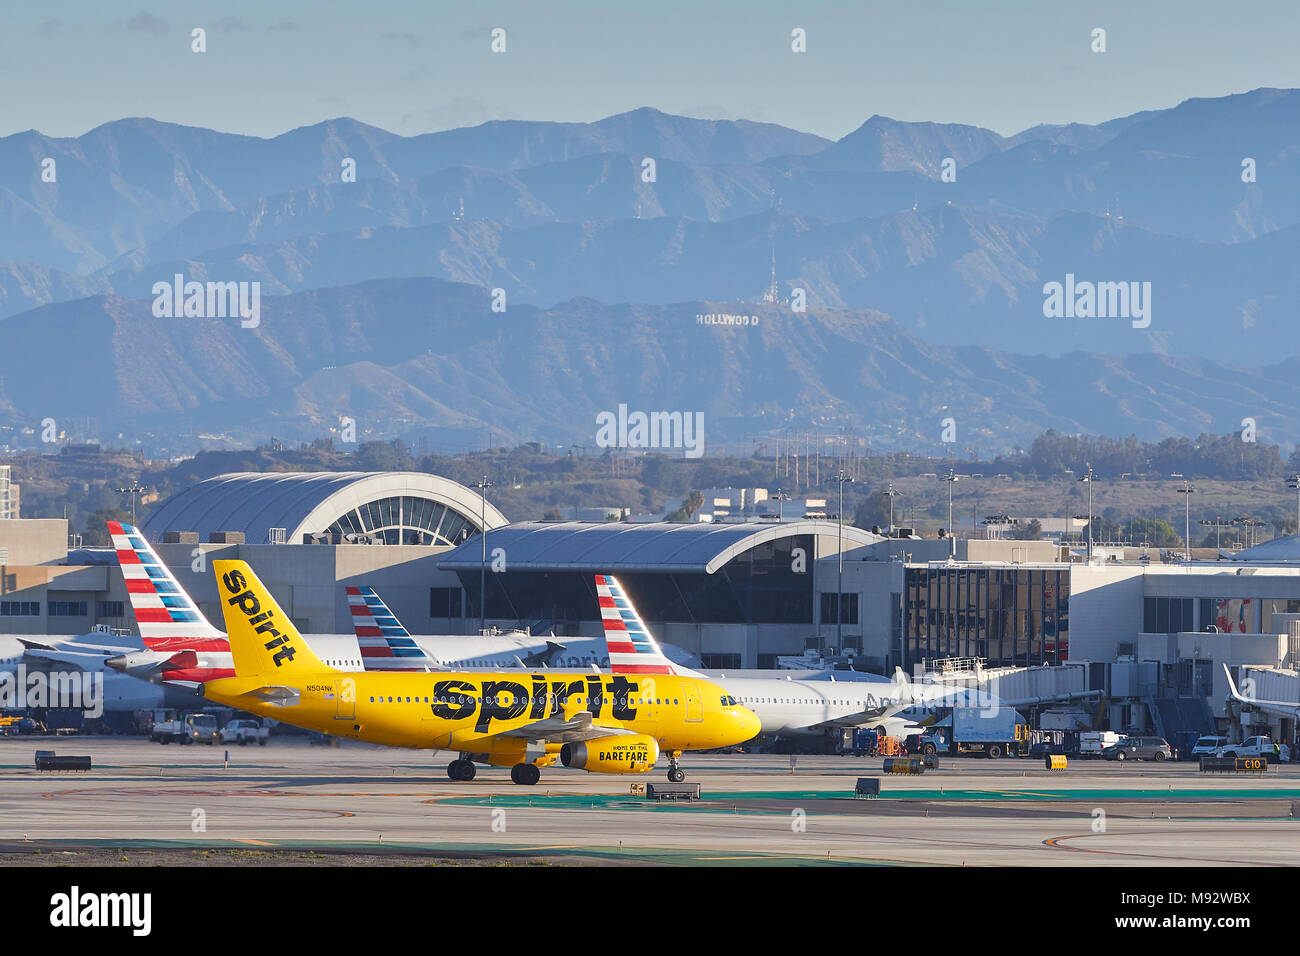 Spirito Airlines Airbus A319 di rullaggio verso il terminale dopo l'atterraggio all'Aeroporto Internazionale di Los Angeles LAX. Il segno di Hollywood in background. Foto Stock